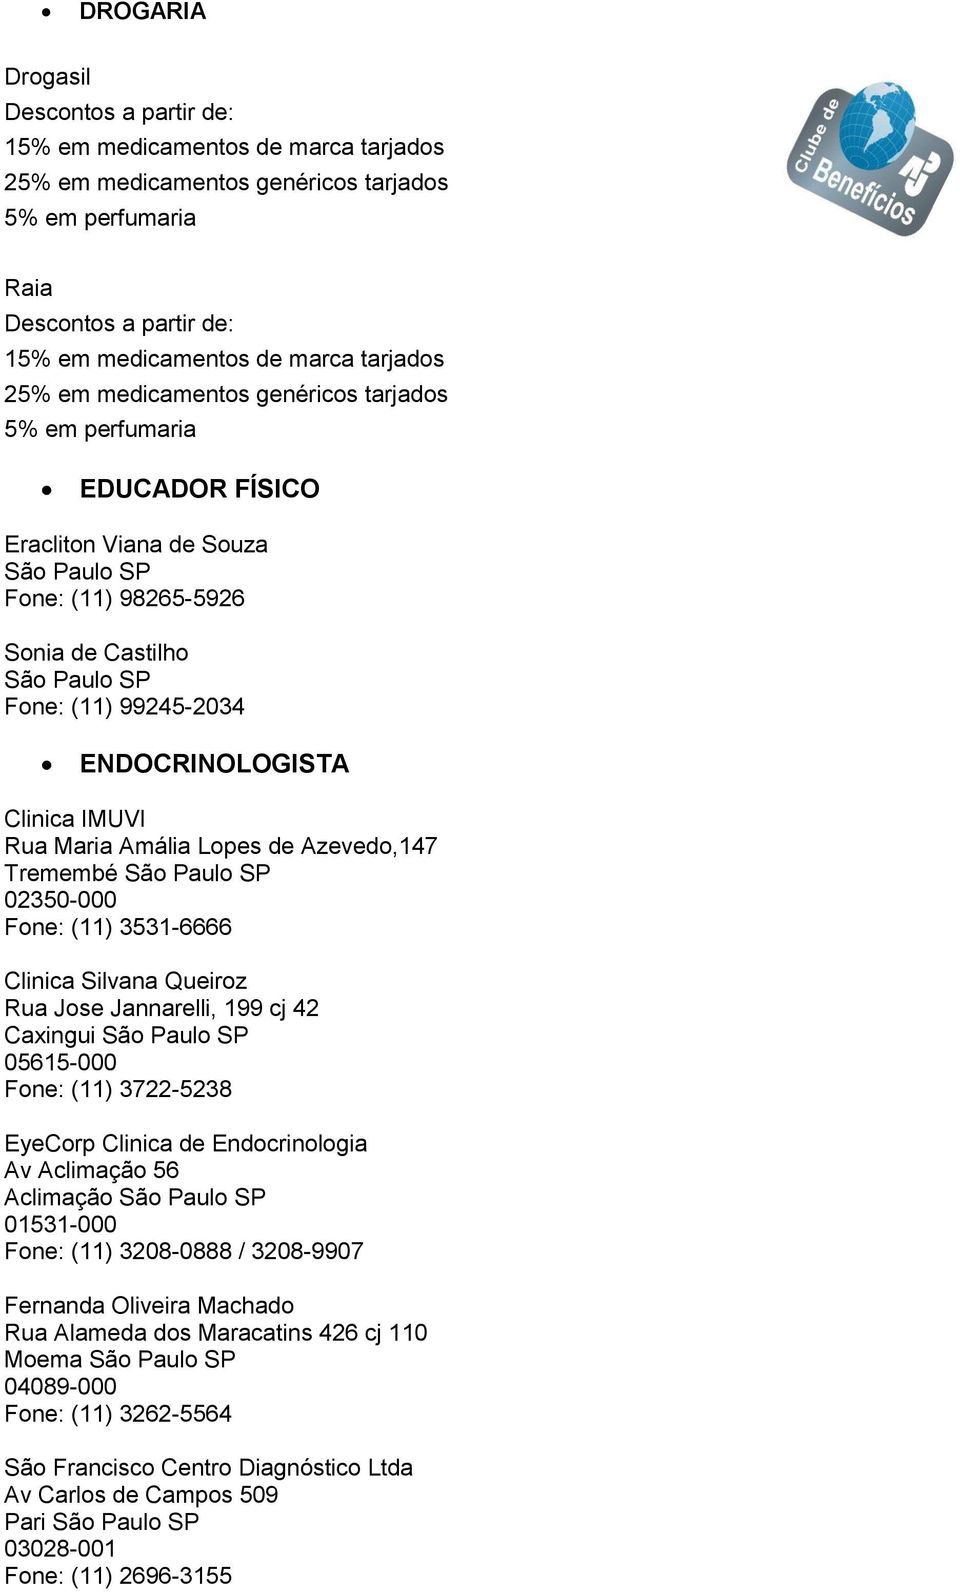 Fone: (11) 99245-2034 ENDOCRINOLOGISTA Clinica Silvana Queiroz Rua Jose Jannarelli, 199 cj 42 Caxingui São Paulo SP 05615-000 Fone: (11) 3722-5238 EyeCorp Clinica de Endocrinologia Av